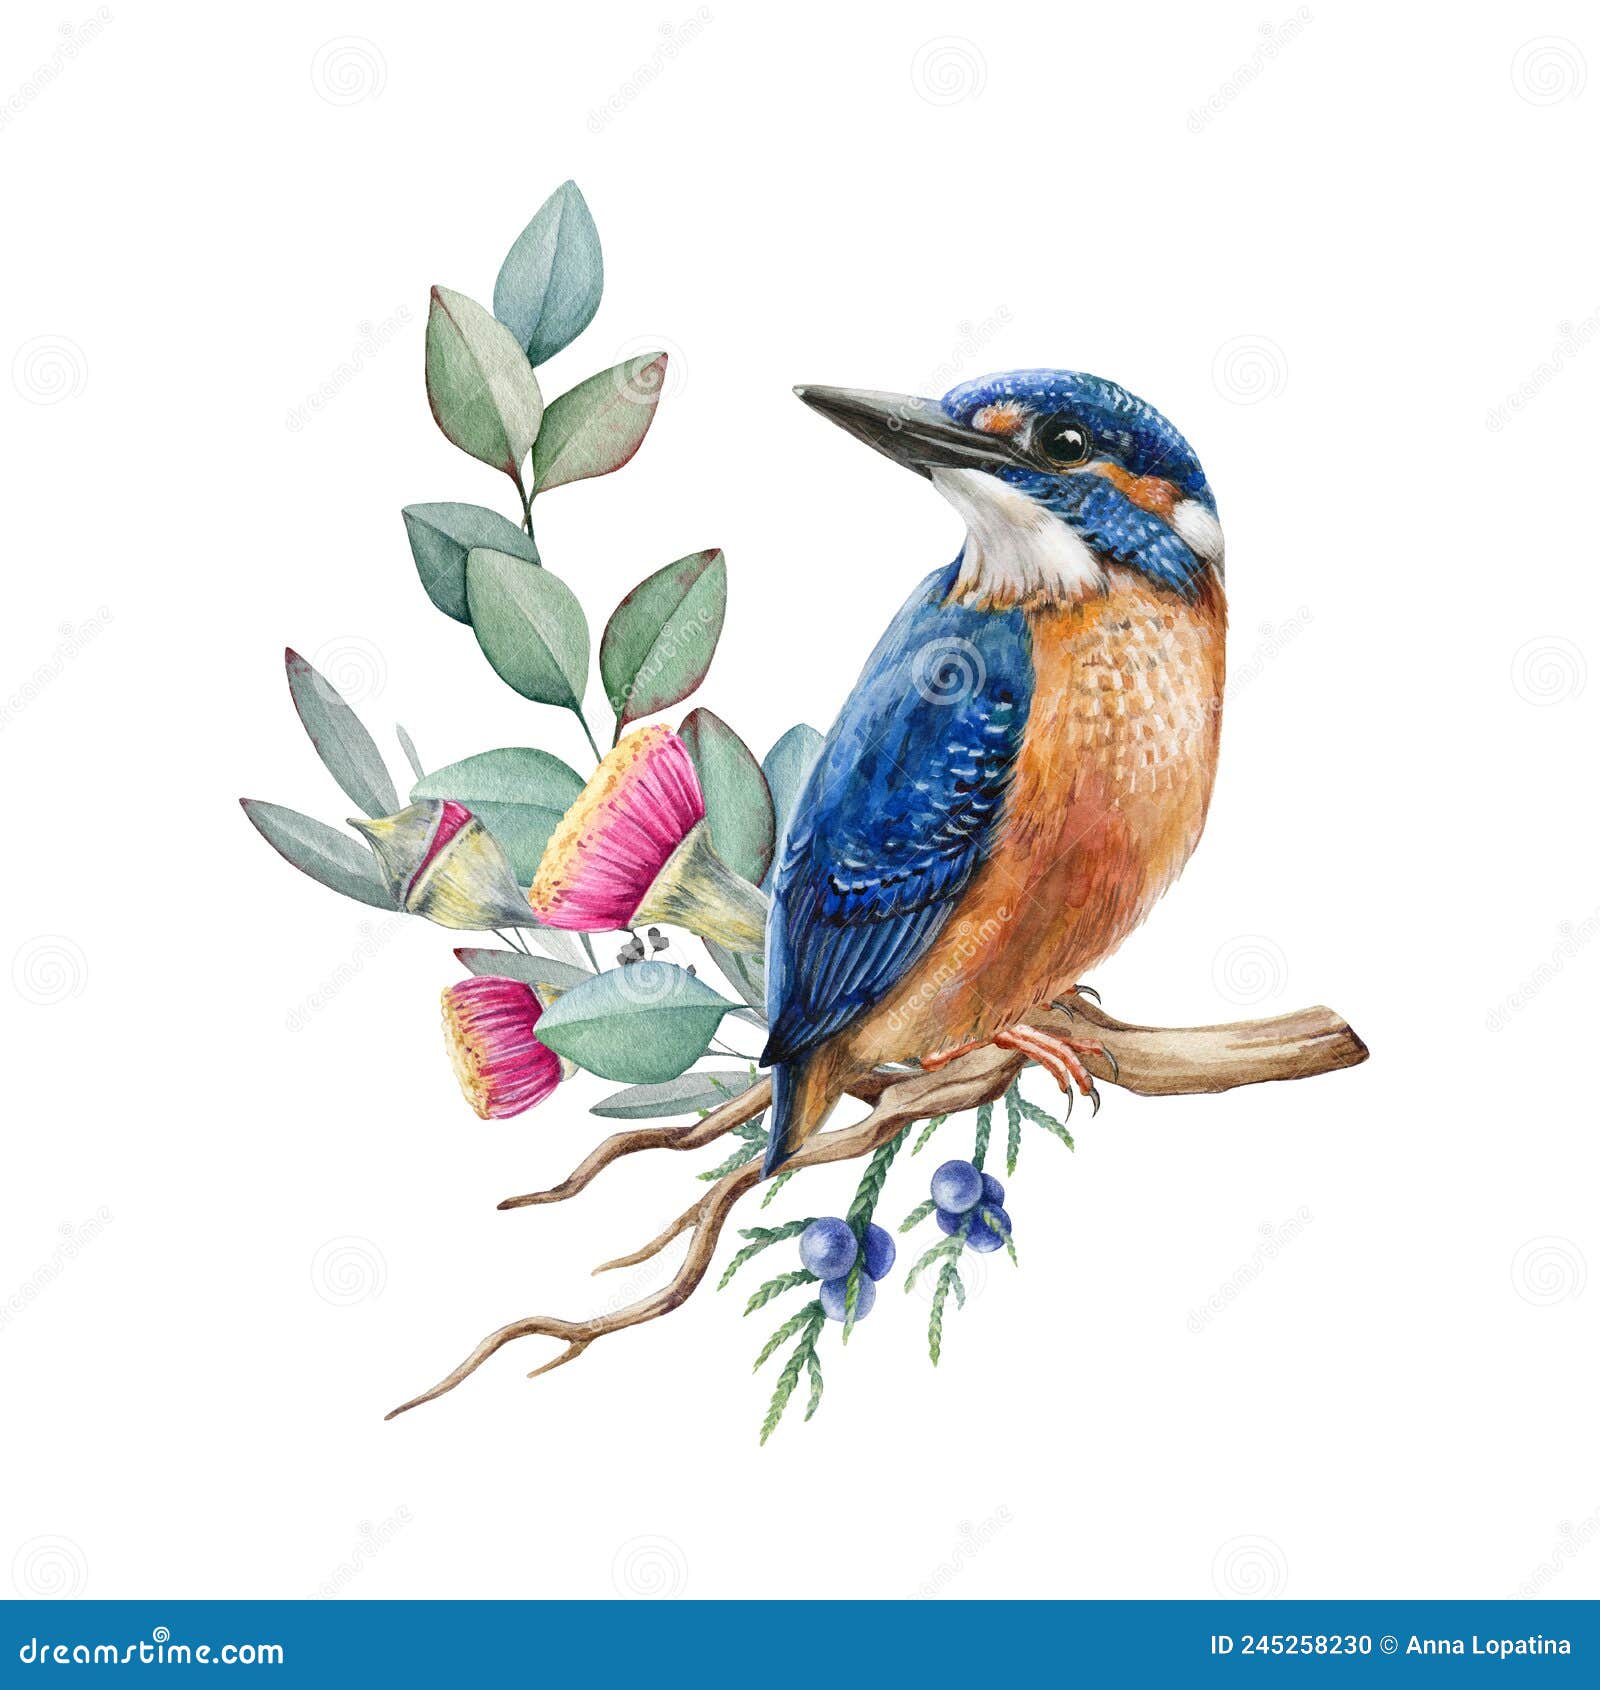 Common Kingfisher - advik's art - Drawings & Illustration, Animals, Birds,  & Fish, Birds, Kingfisher - ArtPal